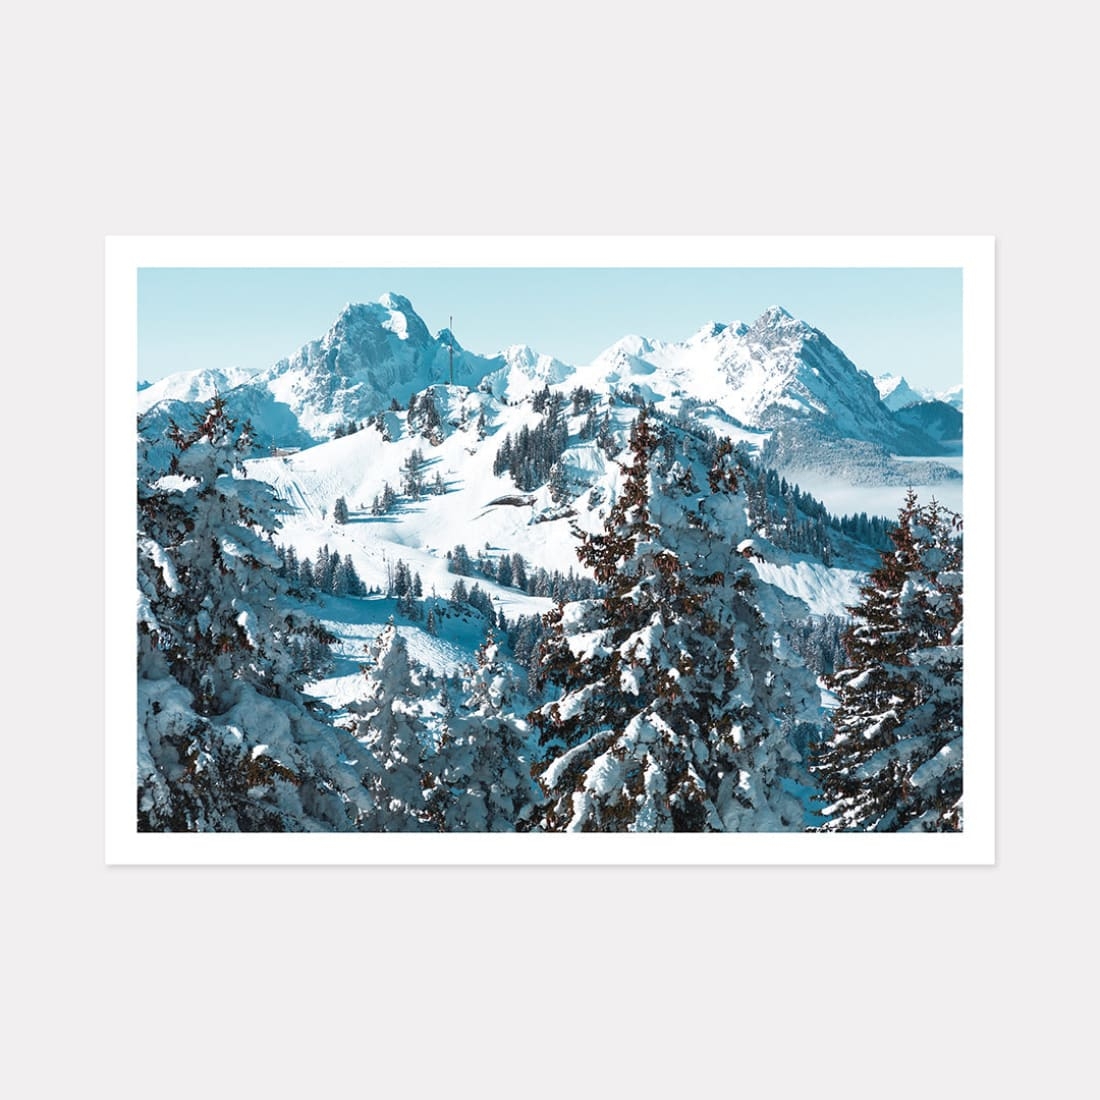 What a View Ii Mountain Art Print, A2 (59.4cm x 42cm) unframed print – Powderhound